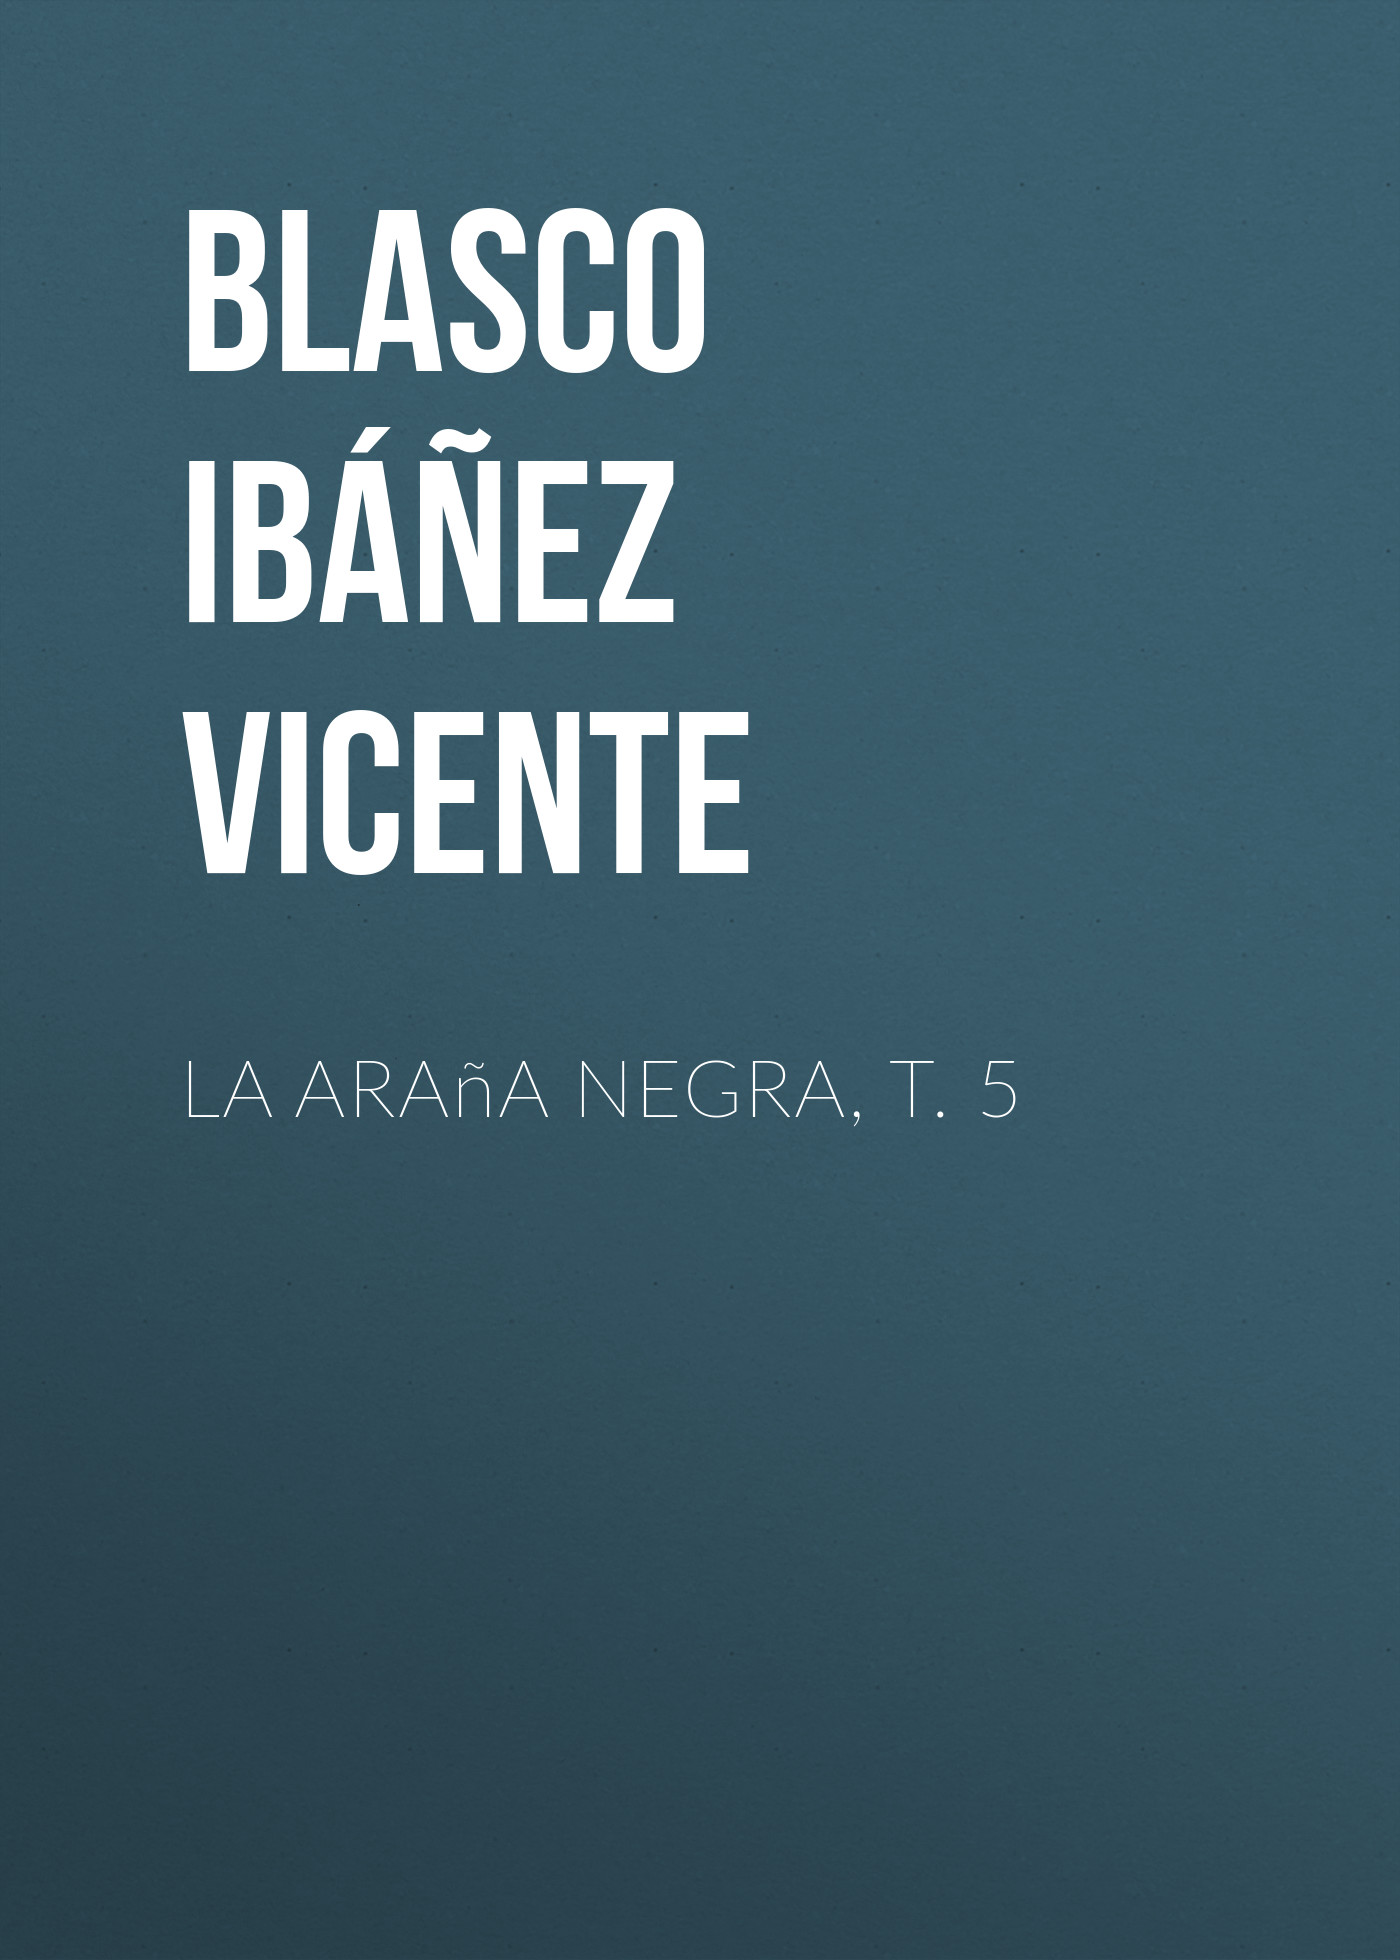 Книга La araña negra, t. 5 из серии , созданная Vicente Blasco Ibáñez, может относится к жанру Зарубежная классика, Зарубежная старинная литература, Иностранные языки. Стоимость электронной книги La araña negra, t. 5 с идентификатором 24178836 составляет 0 руб.